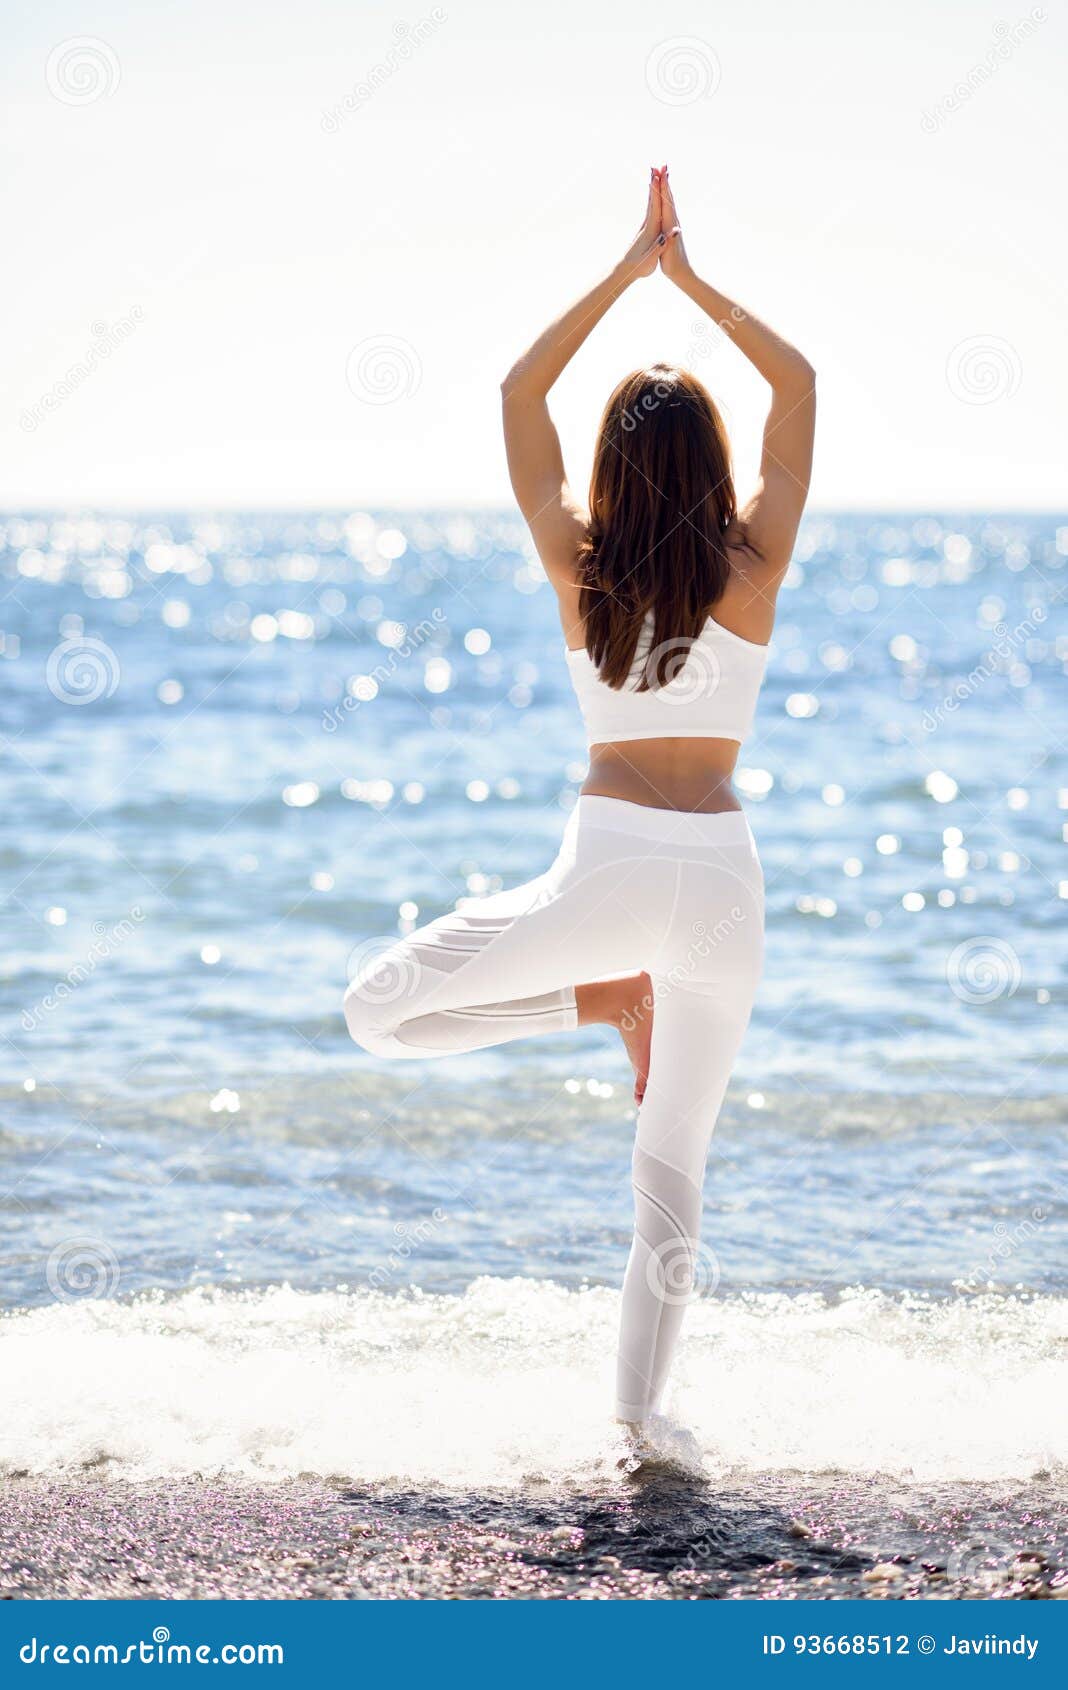 Joven Que Hace Yoga En La Ropa Blanca Que De La Playa Foto de archivo - Imagen de aptitud, adulto: 93668512